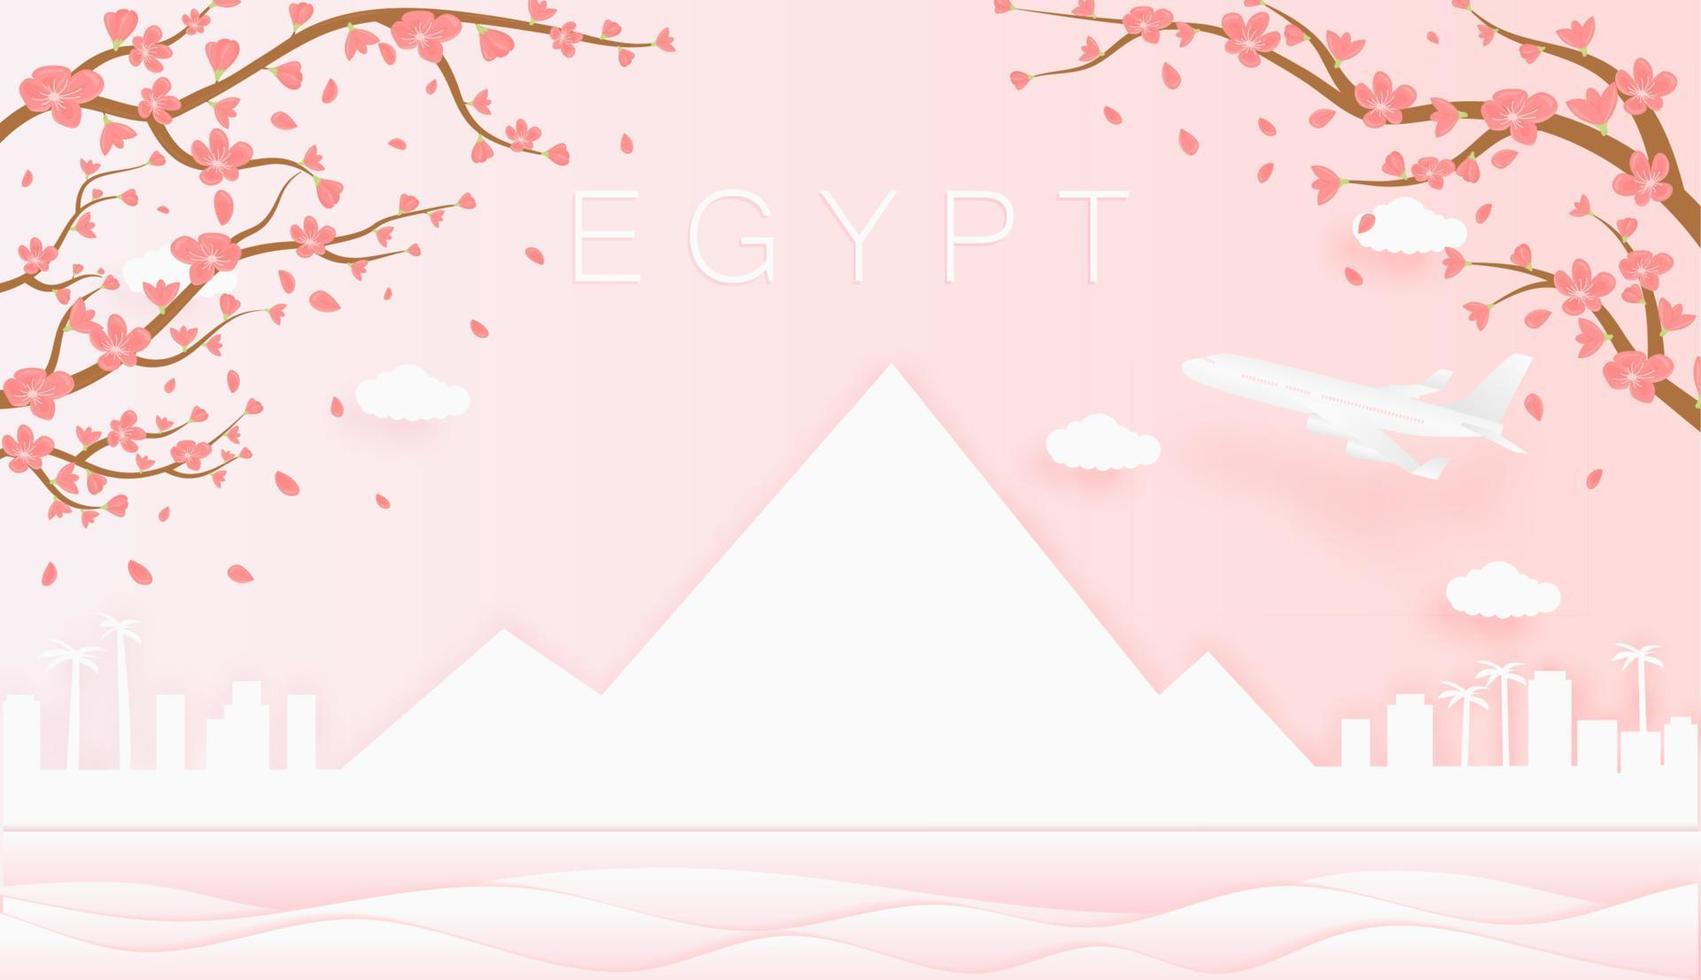 panorama viaje tarjeta postal, póster, excursión publicidad de mundo famoso puntos de referencia de Egipto, primavera temporada con floreciente flores en árbol vector icono